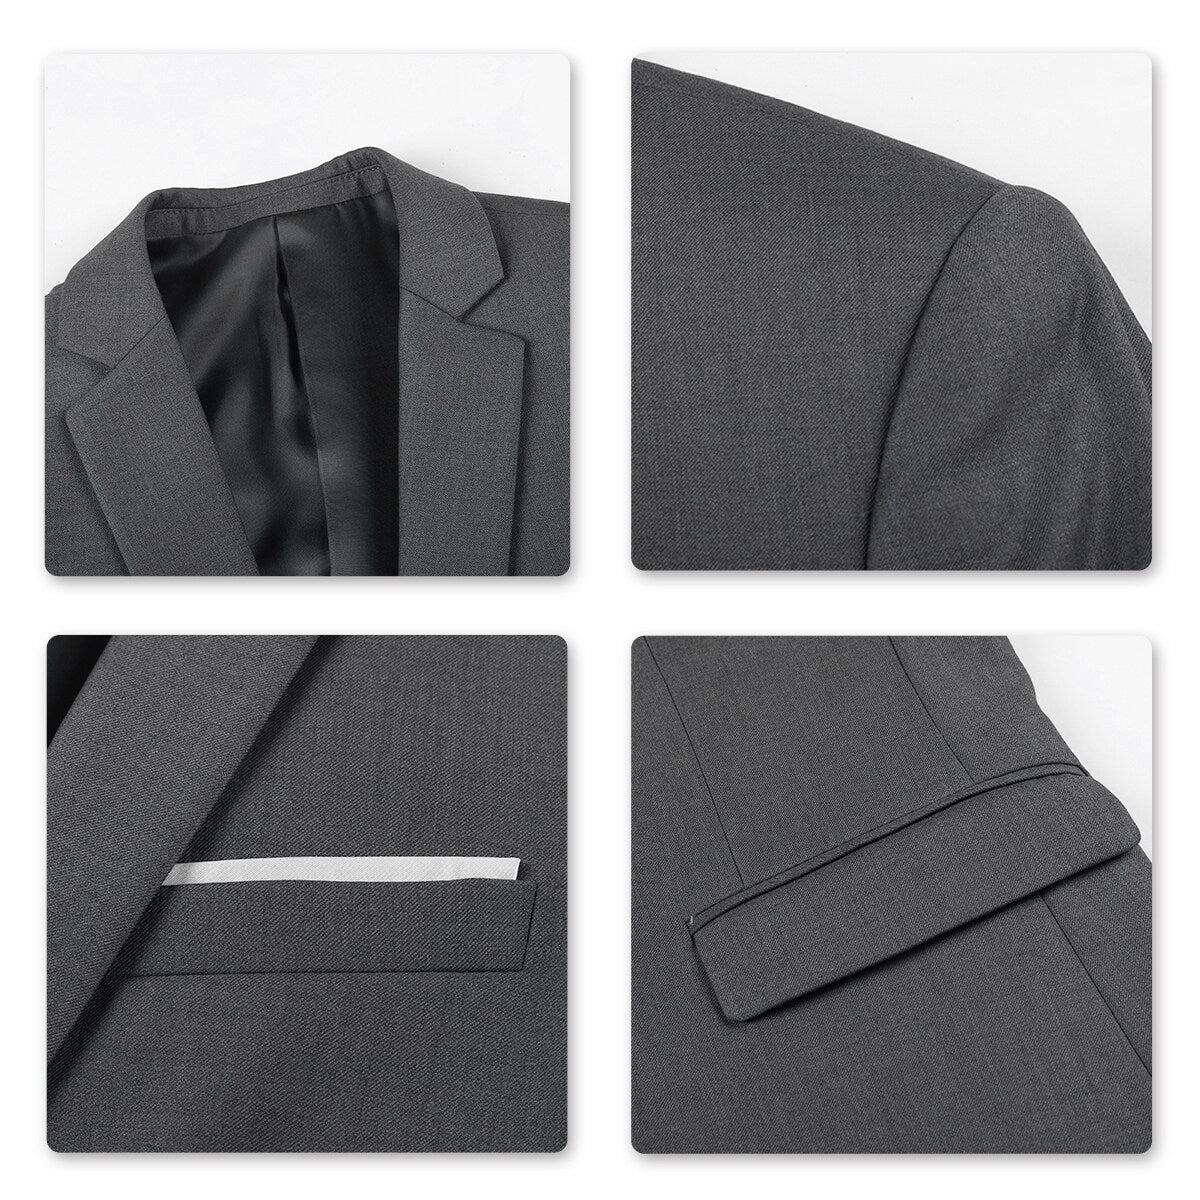 Grey Stylish Blazer One Button Casual Blazer -Cloudstyle